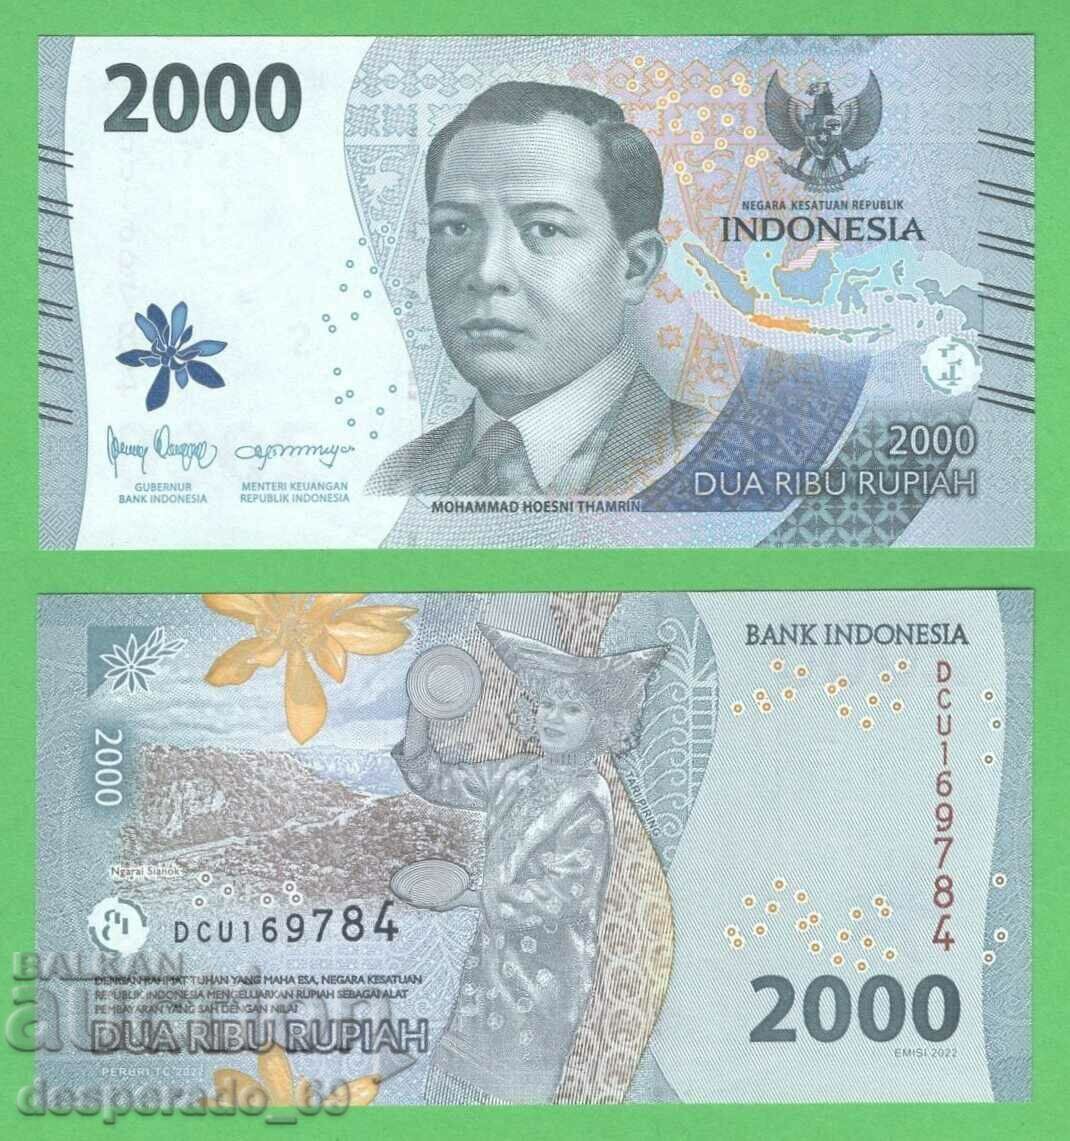 (¯`'•.¸ INDONEZIA 2000 rupia 2022 UNC ¸.•'´¯)